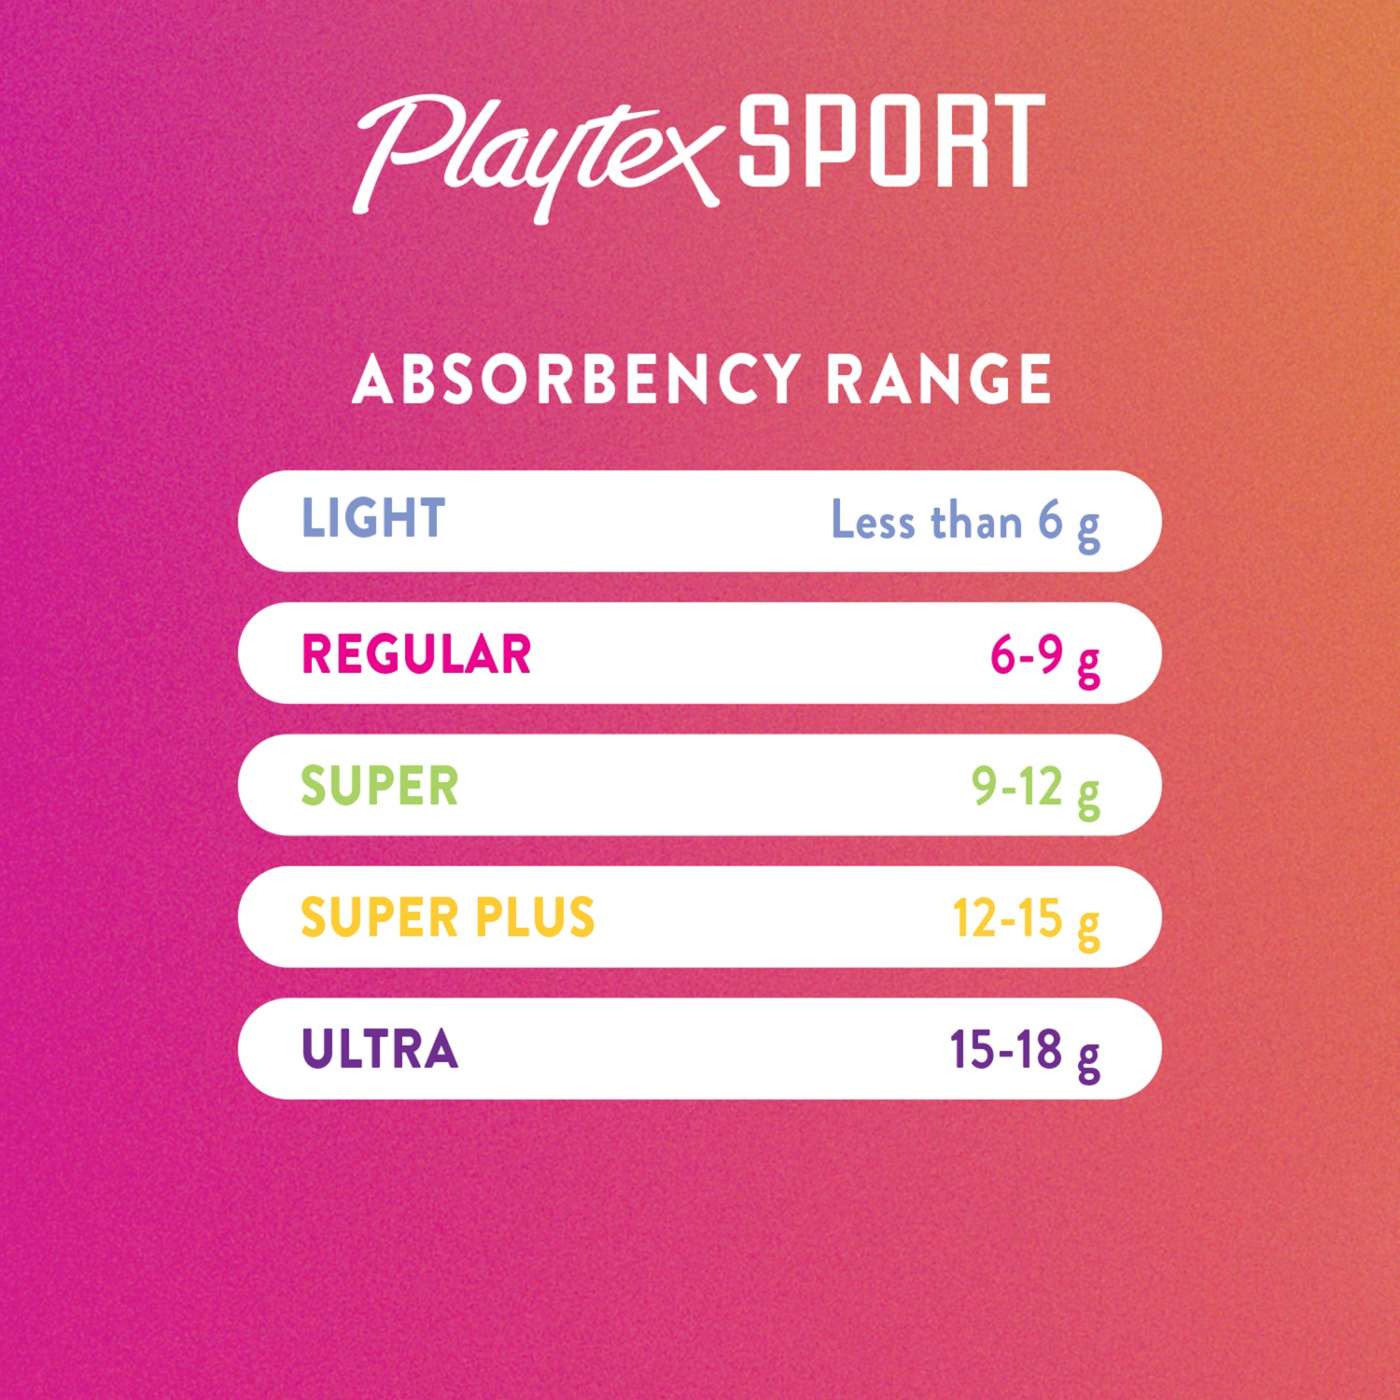 Playtex Sport Plastic Tampons - Super Plus Absorbency; image 2 of 5